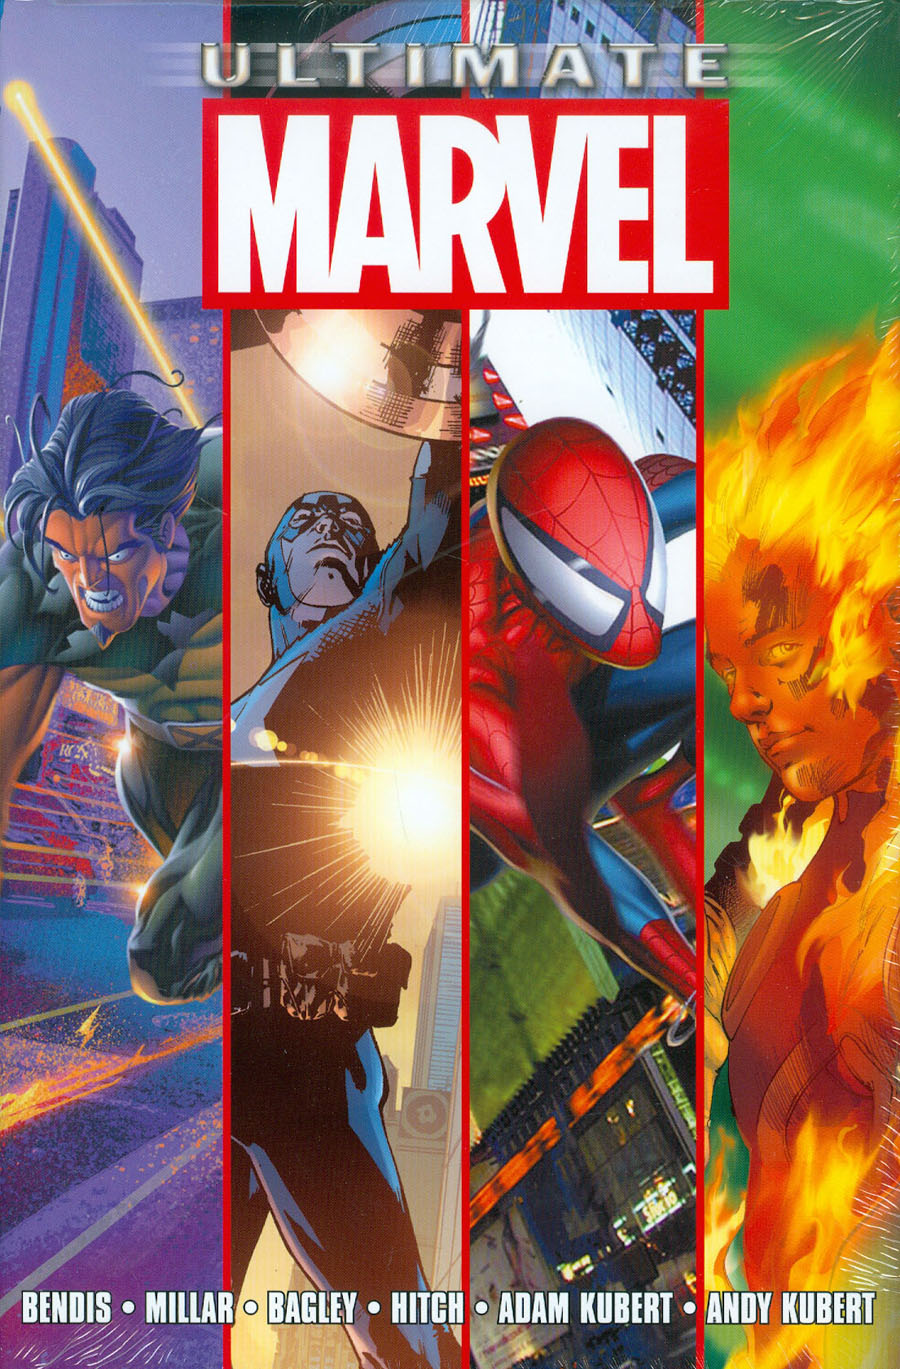 Ultimate Marvel Omnibus Vol 1 HC